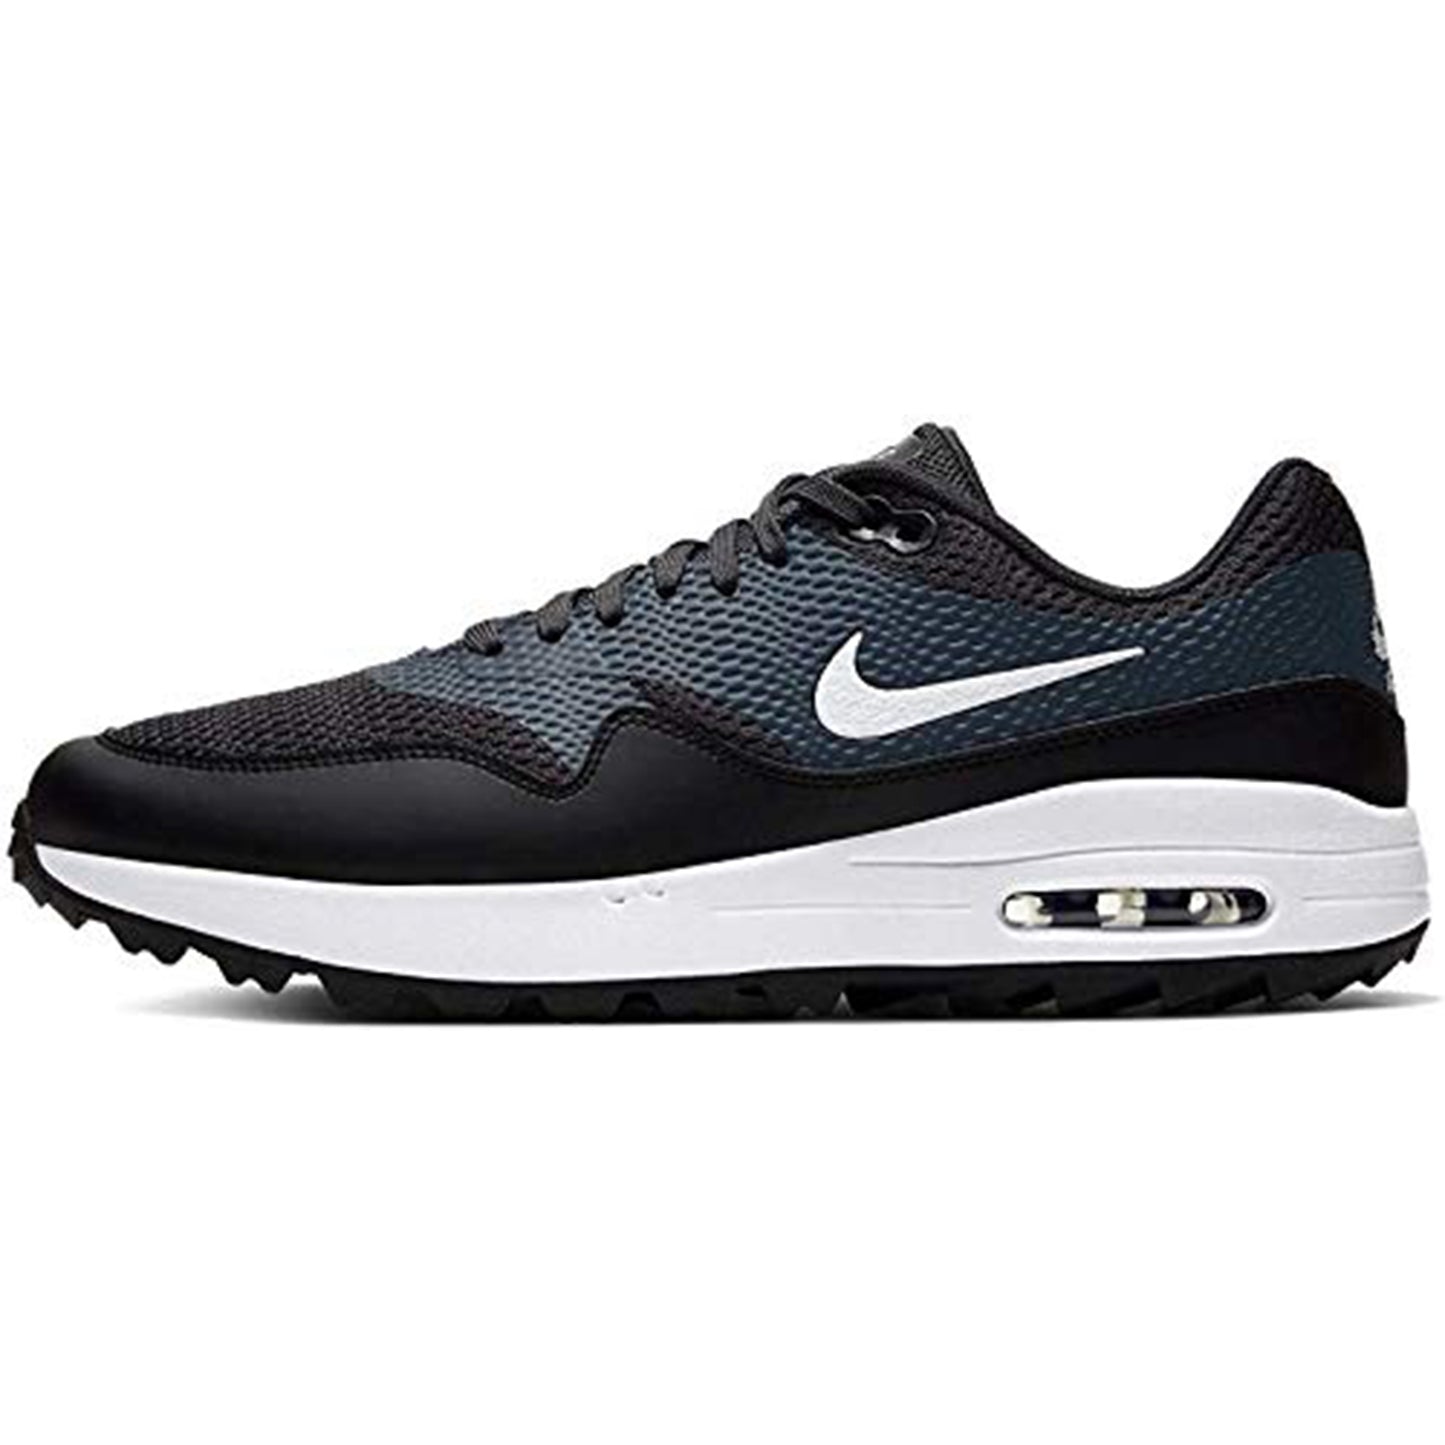 Nike Air Max 1 G Hombre Golf Talla 7 - Ci7576-001 Negras/Blancas